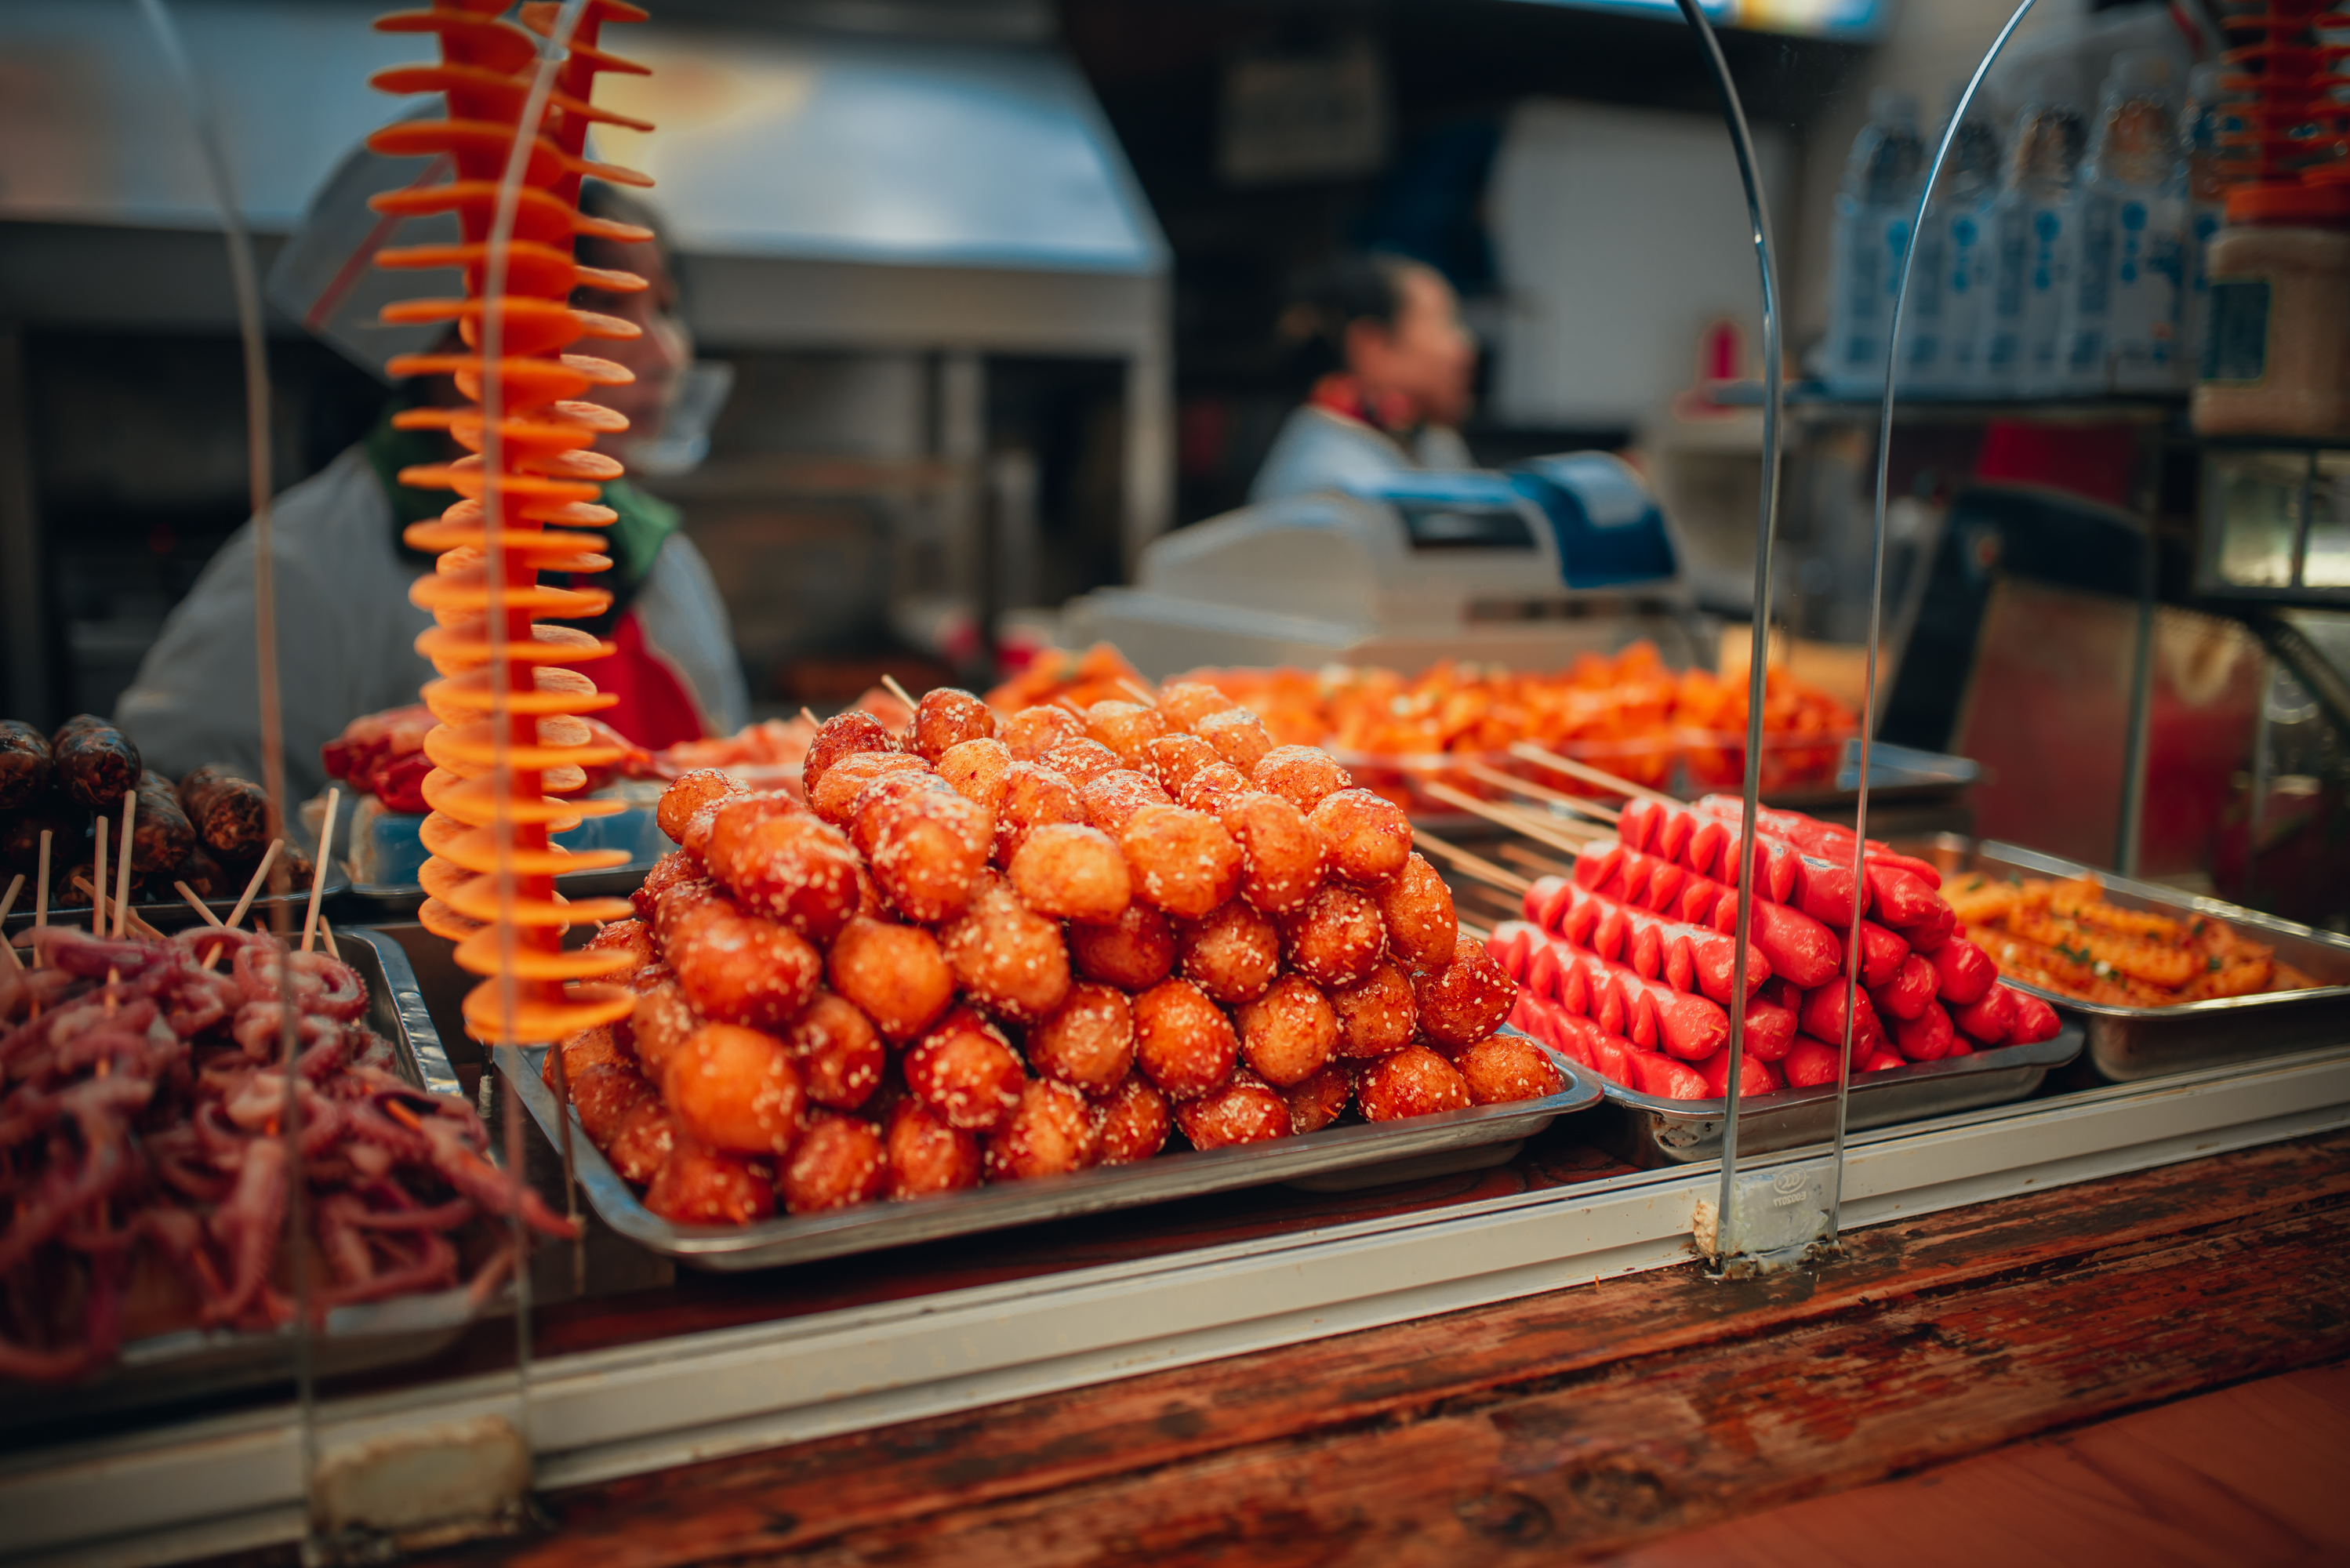 成都名气最大的一条美食街:锦里,游客却说东西贵还难吃